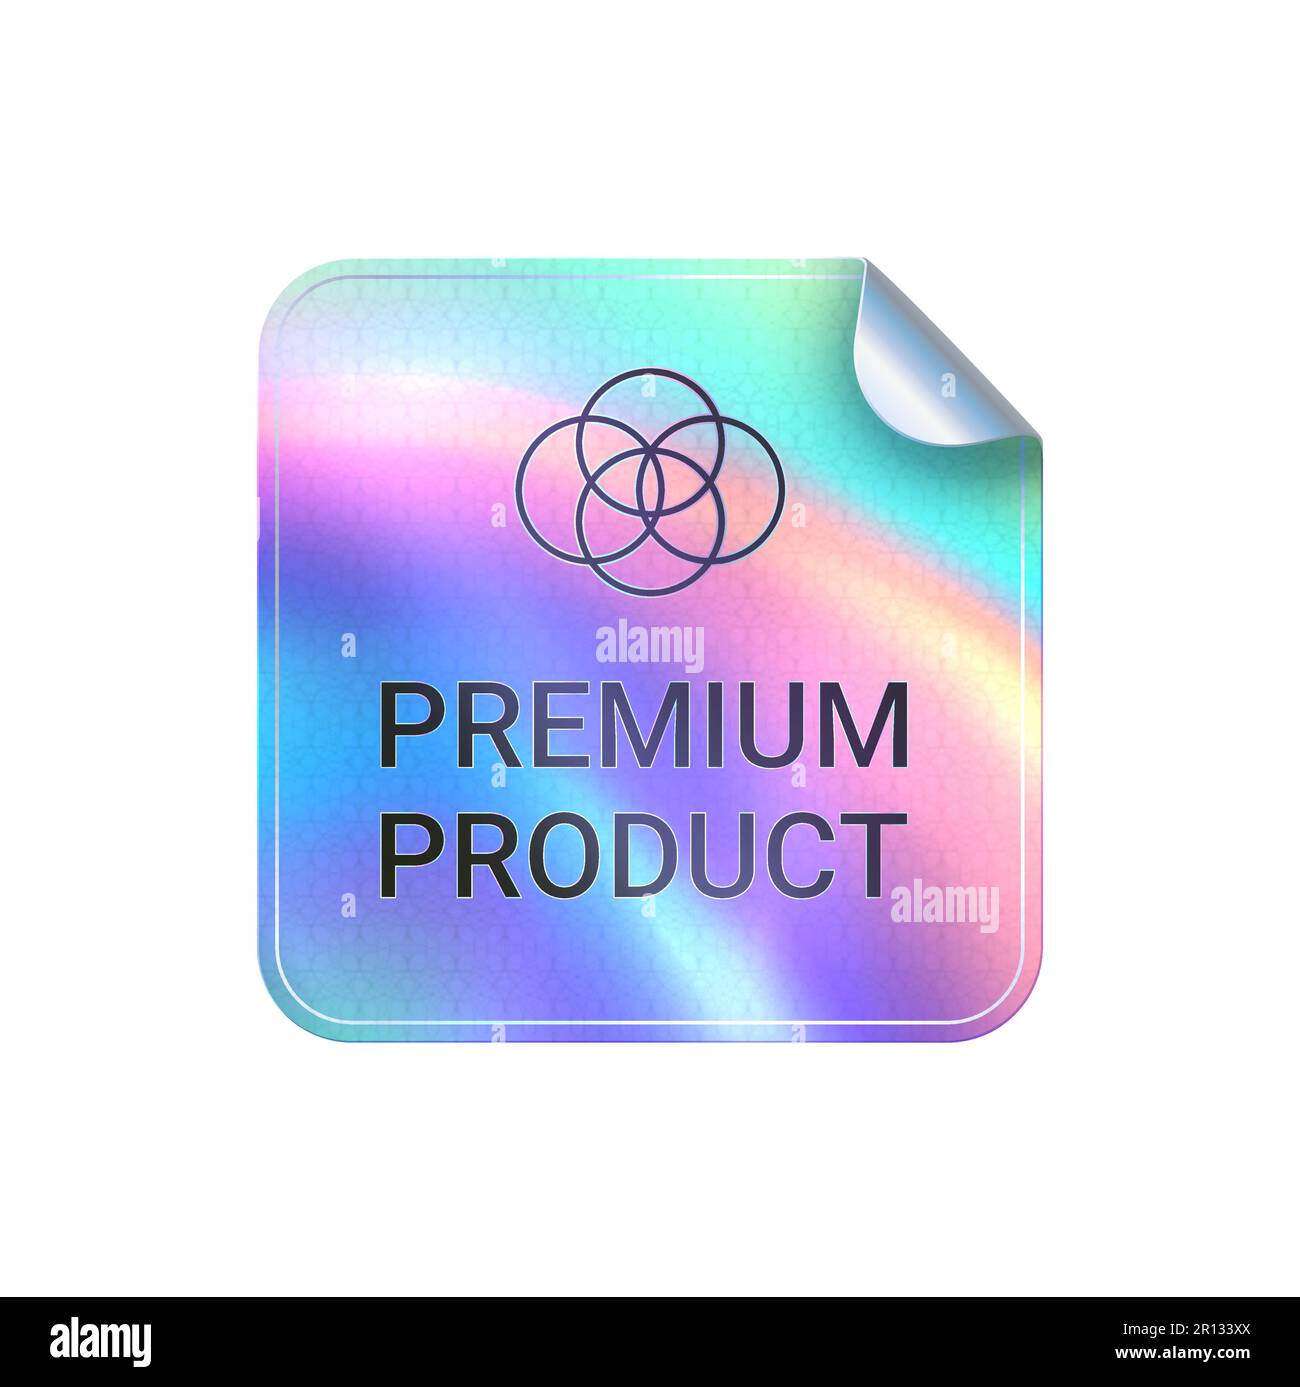 Offizielle Produkt rund Hologramm realistische Aufkleber. Vektor-Symbol,  Abzeichen, Aufkleber für Produktqualität Garantie und Label-Design  Stock-Vektorgrafik - Alamy